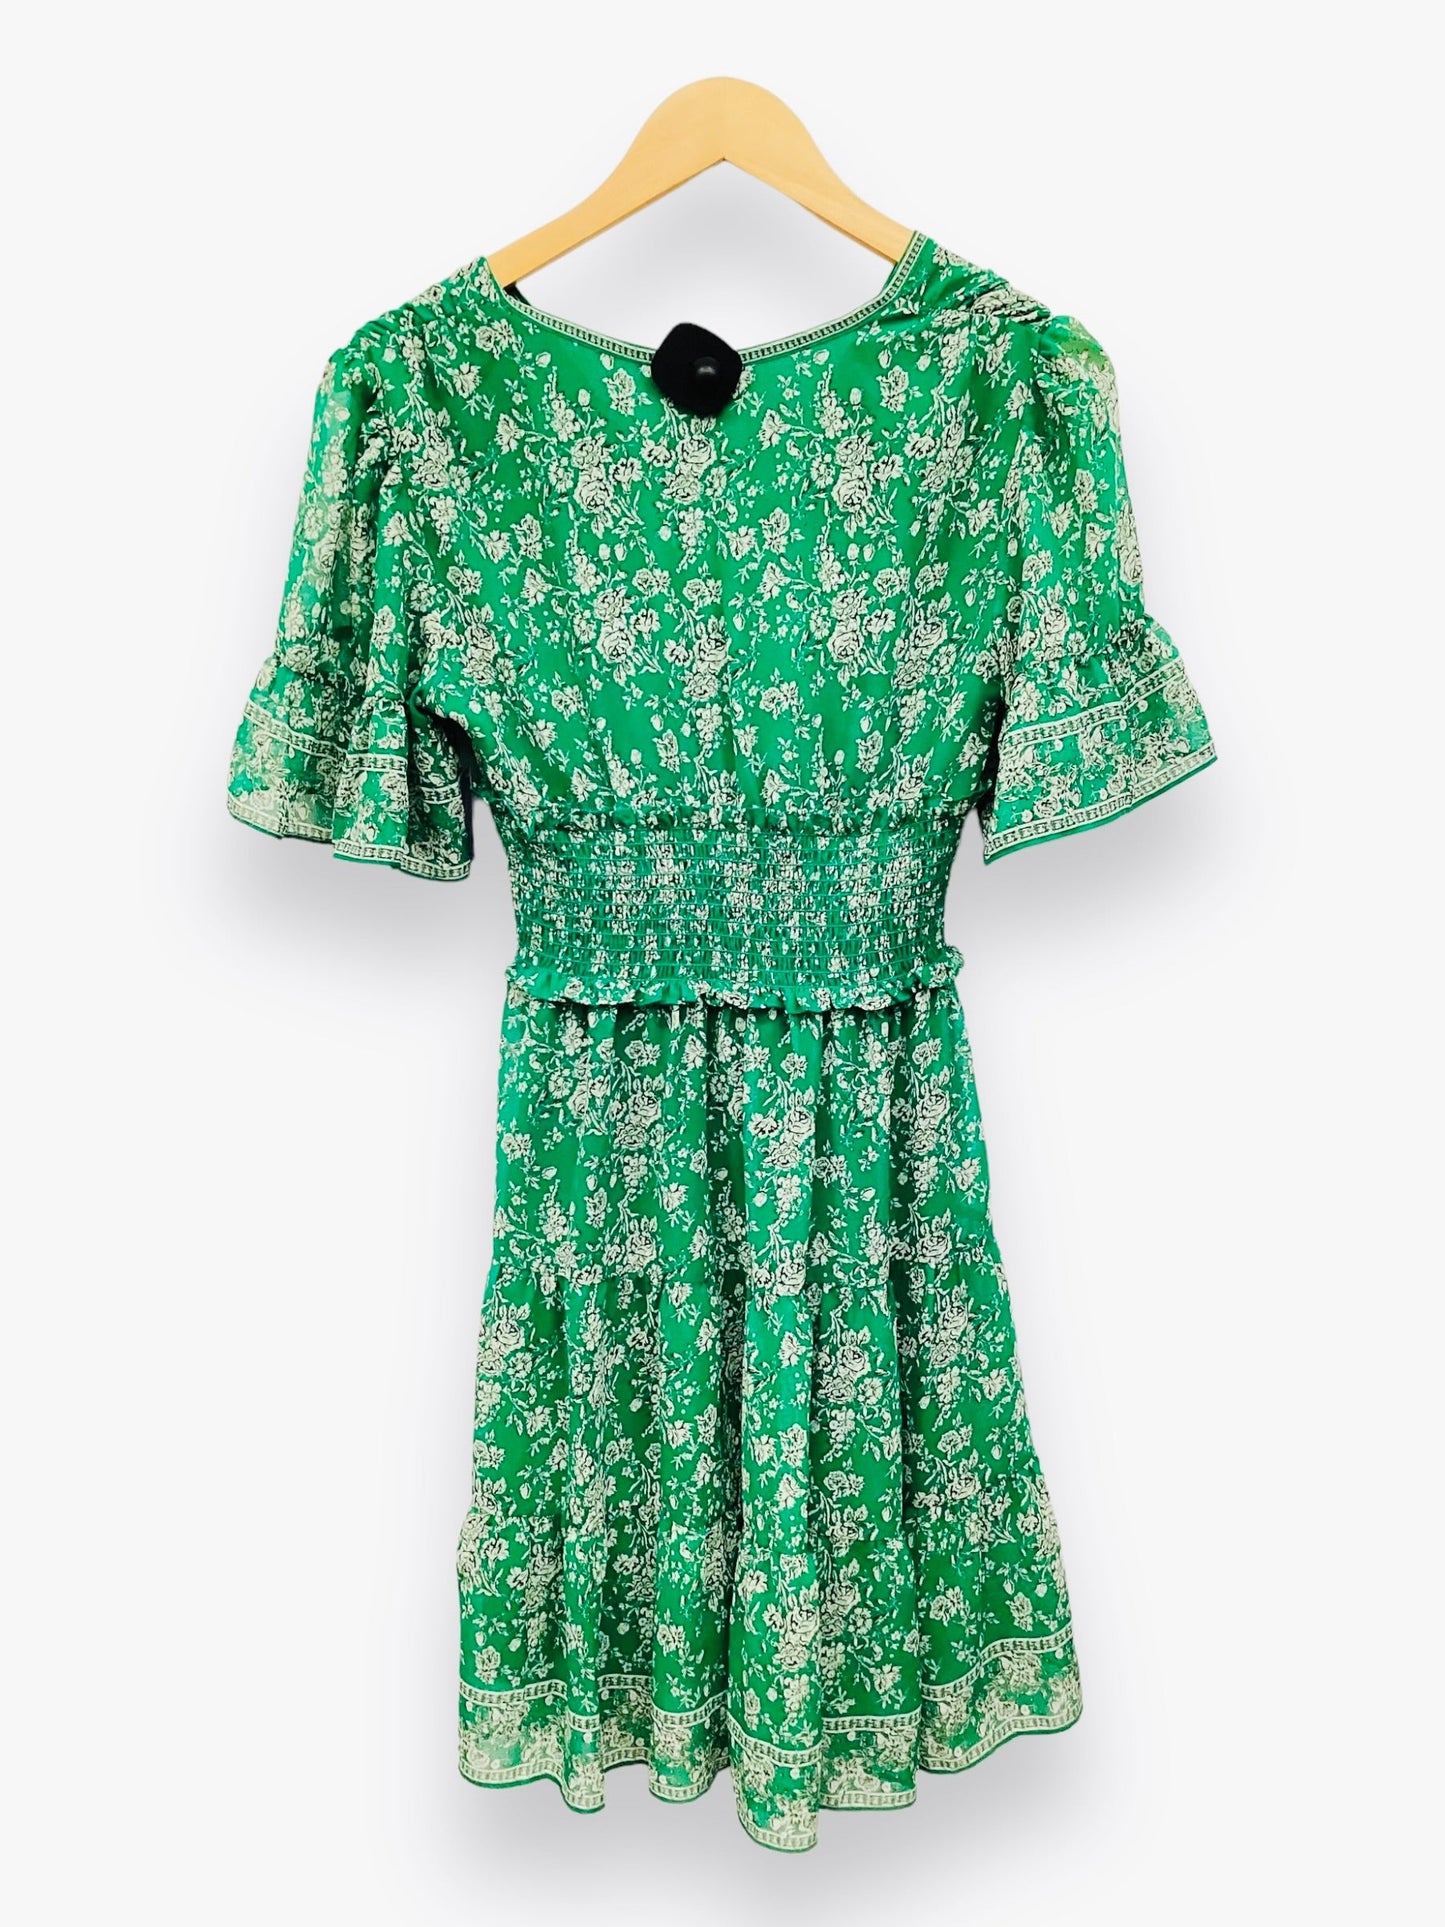 NWT Green Dress Casual Midi Max Studio, Size Xs